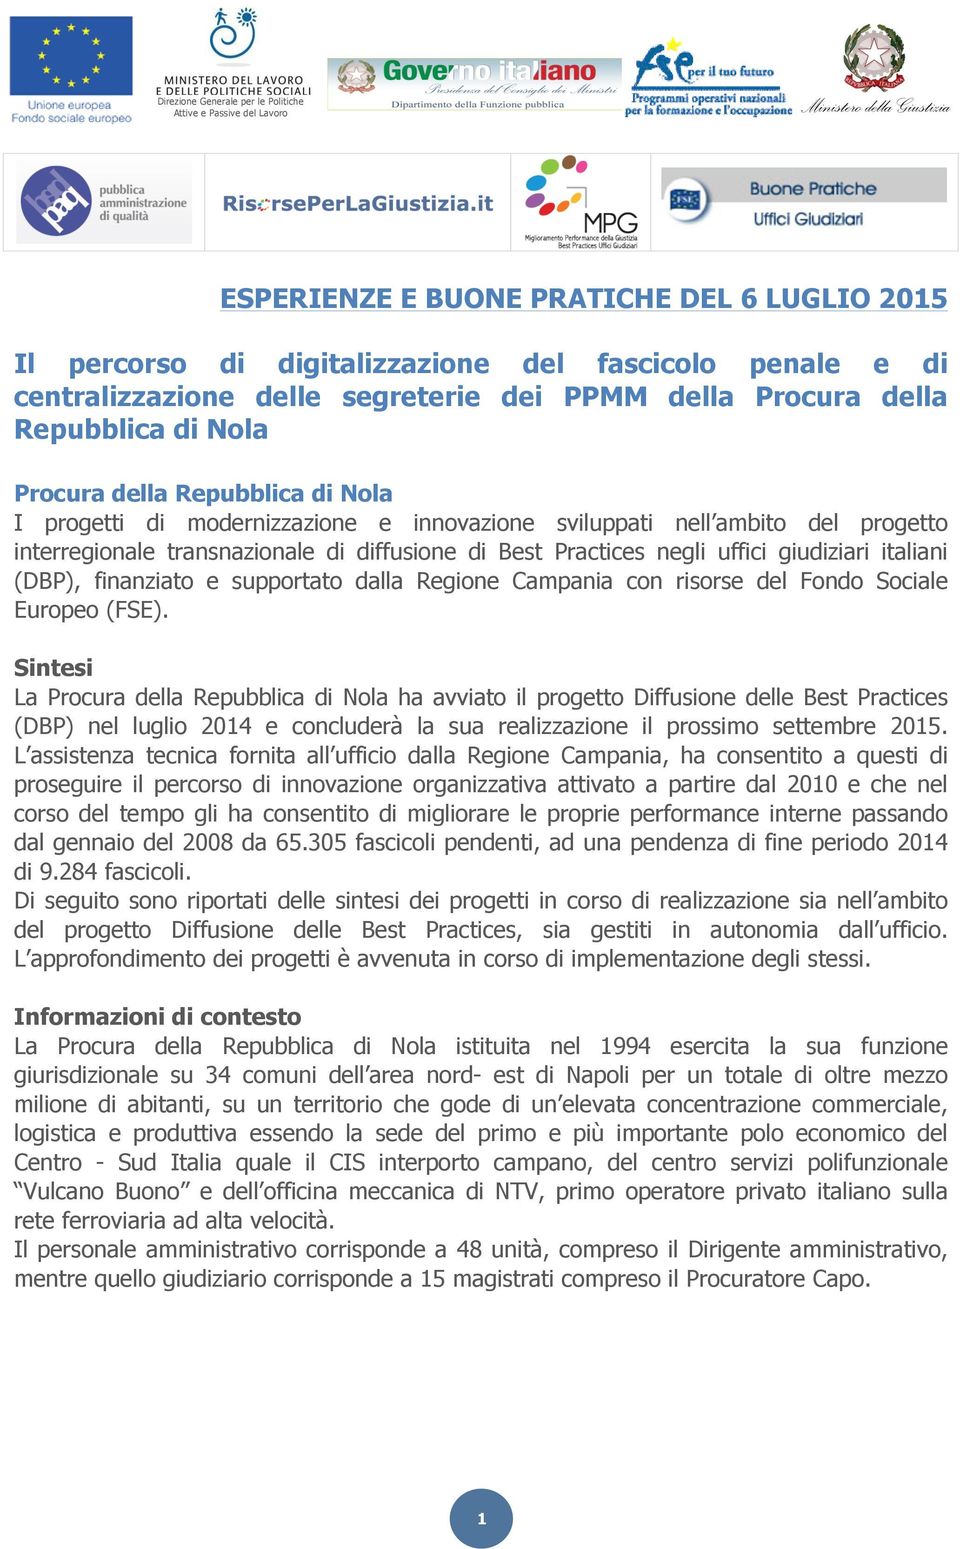 transnazionale di diffusione di Best Practices negli uffici giudiziari italiani (DBP), finanziato e supportato dalla Regione Campania con risorse del Fondo Sociale Europeo (FSE).